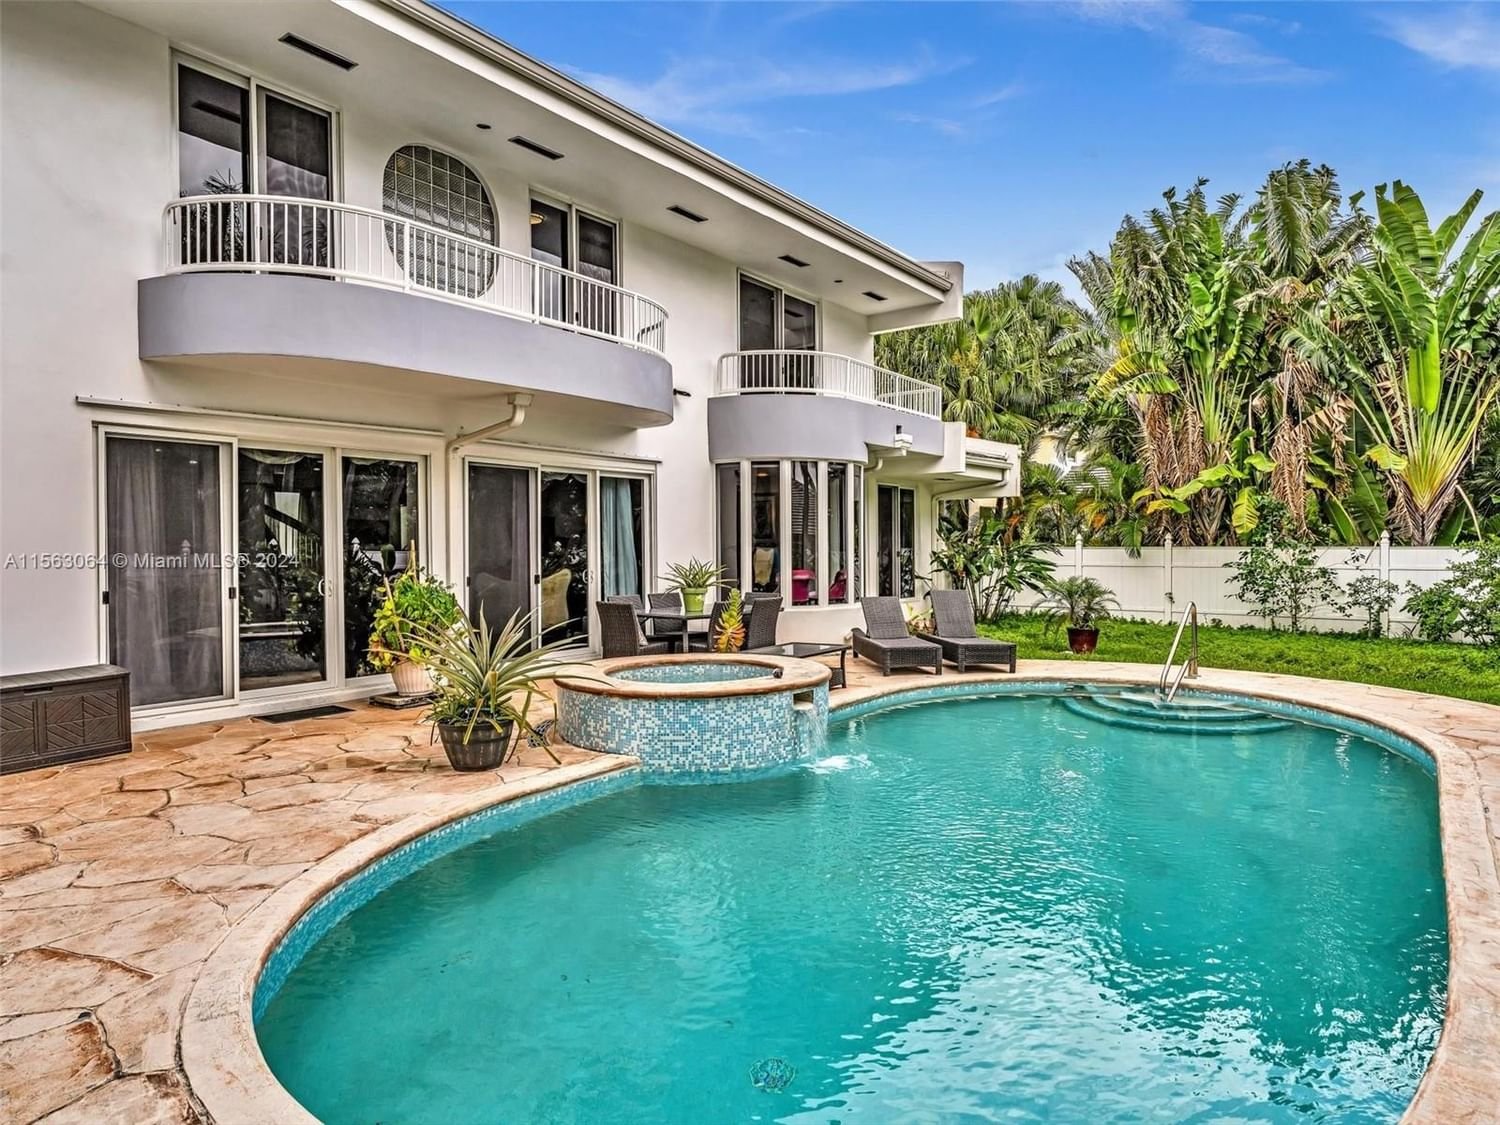 Real estate property located at 616 Ocean Blvd, Miami-Dade County, GOLDEN BEACH SEC A, Golden Beach, FL